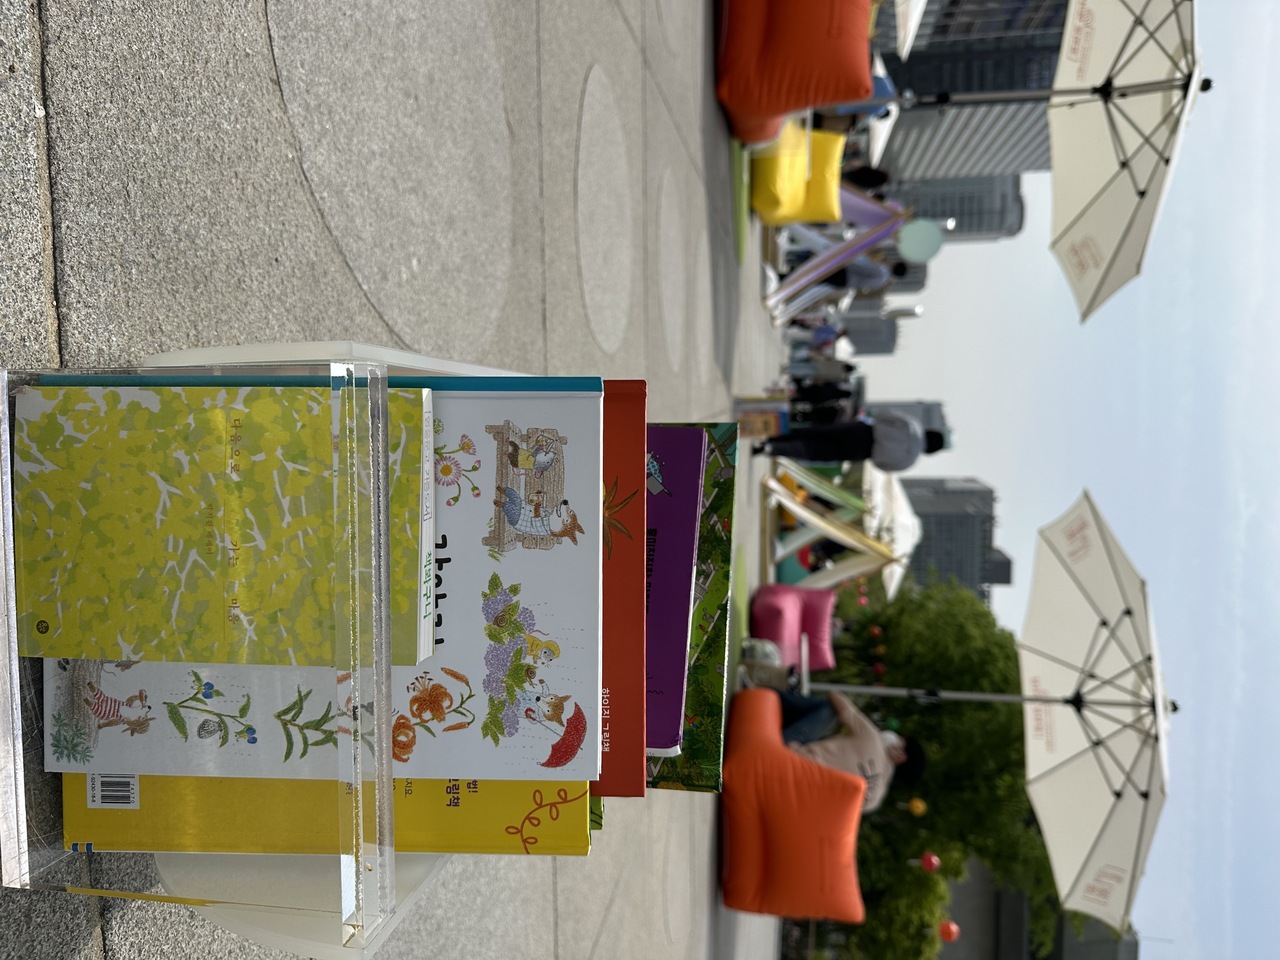 首尔市政府举办的「首尔露天图书馆」活动，民众无论在哪落座，都能随手取得书籍阅读。中央社